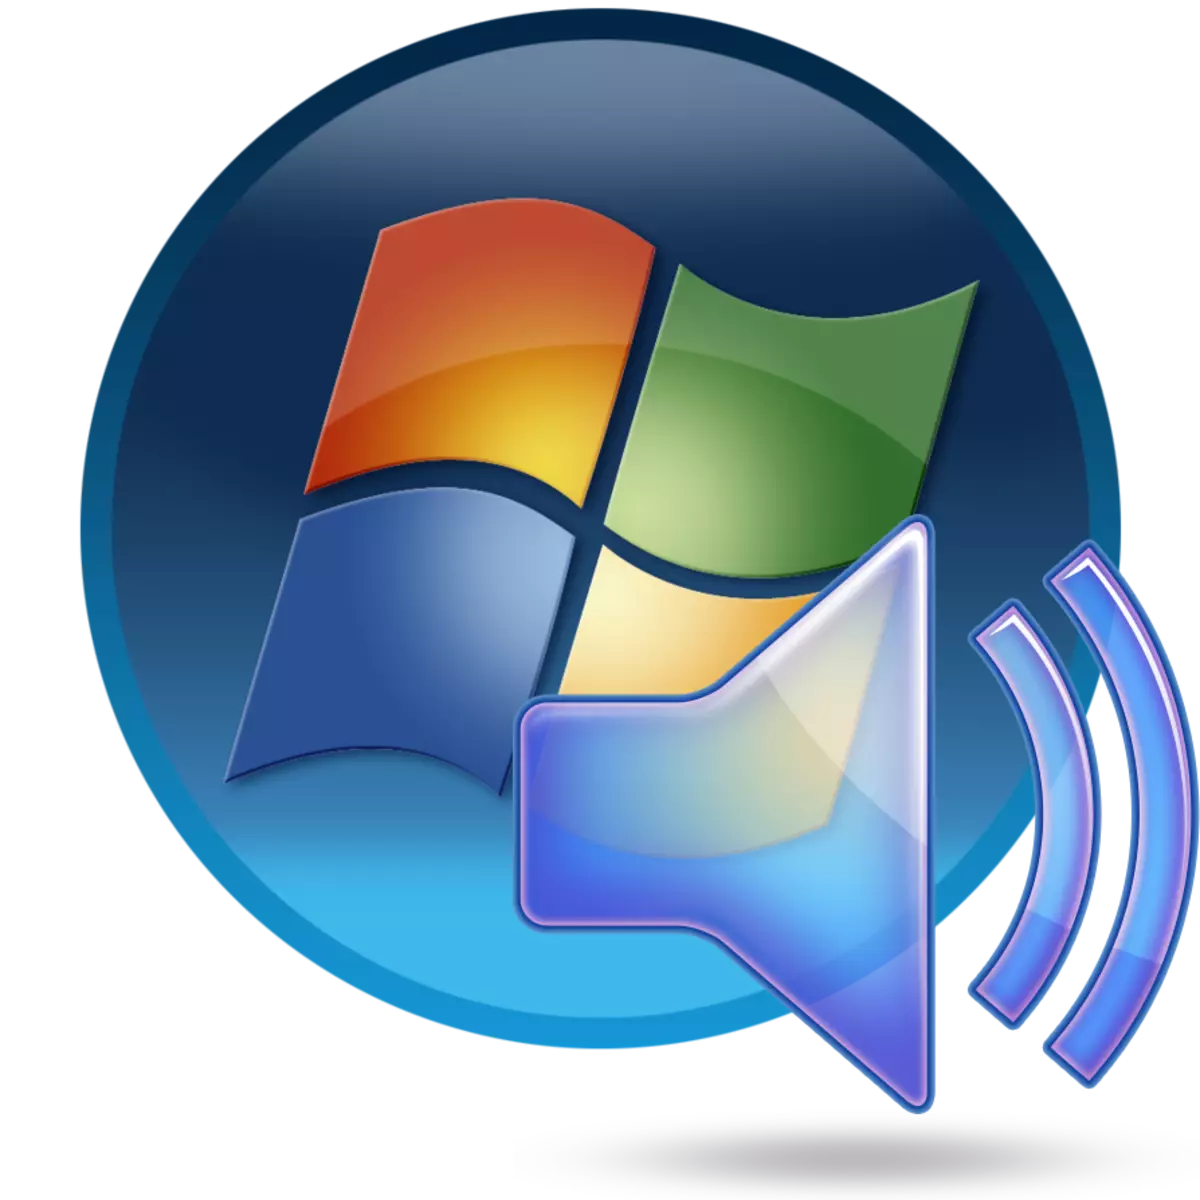 Instalimi i një pajisjeje të shëndoshë në një PC me Windows 7